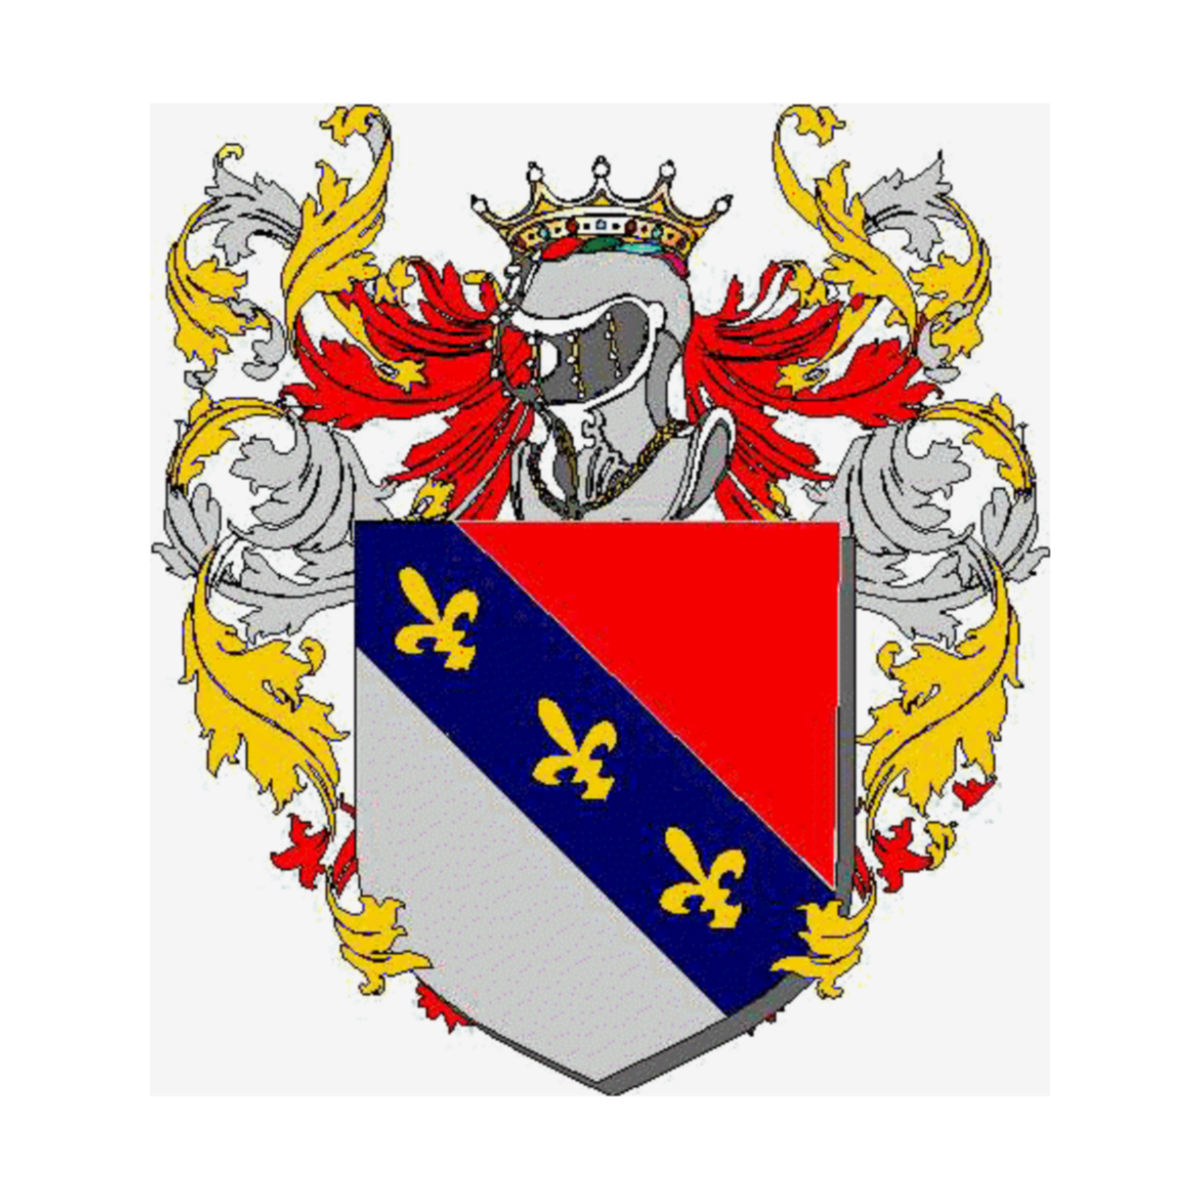 Coat of arms of familyOrlandini